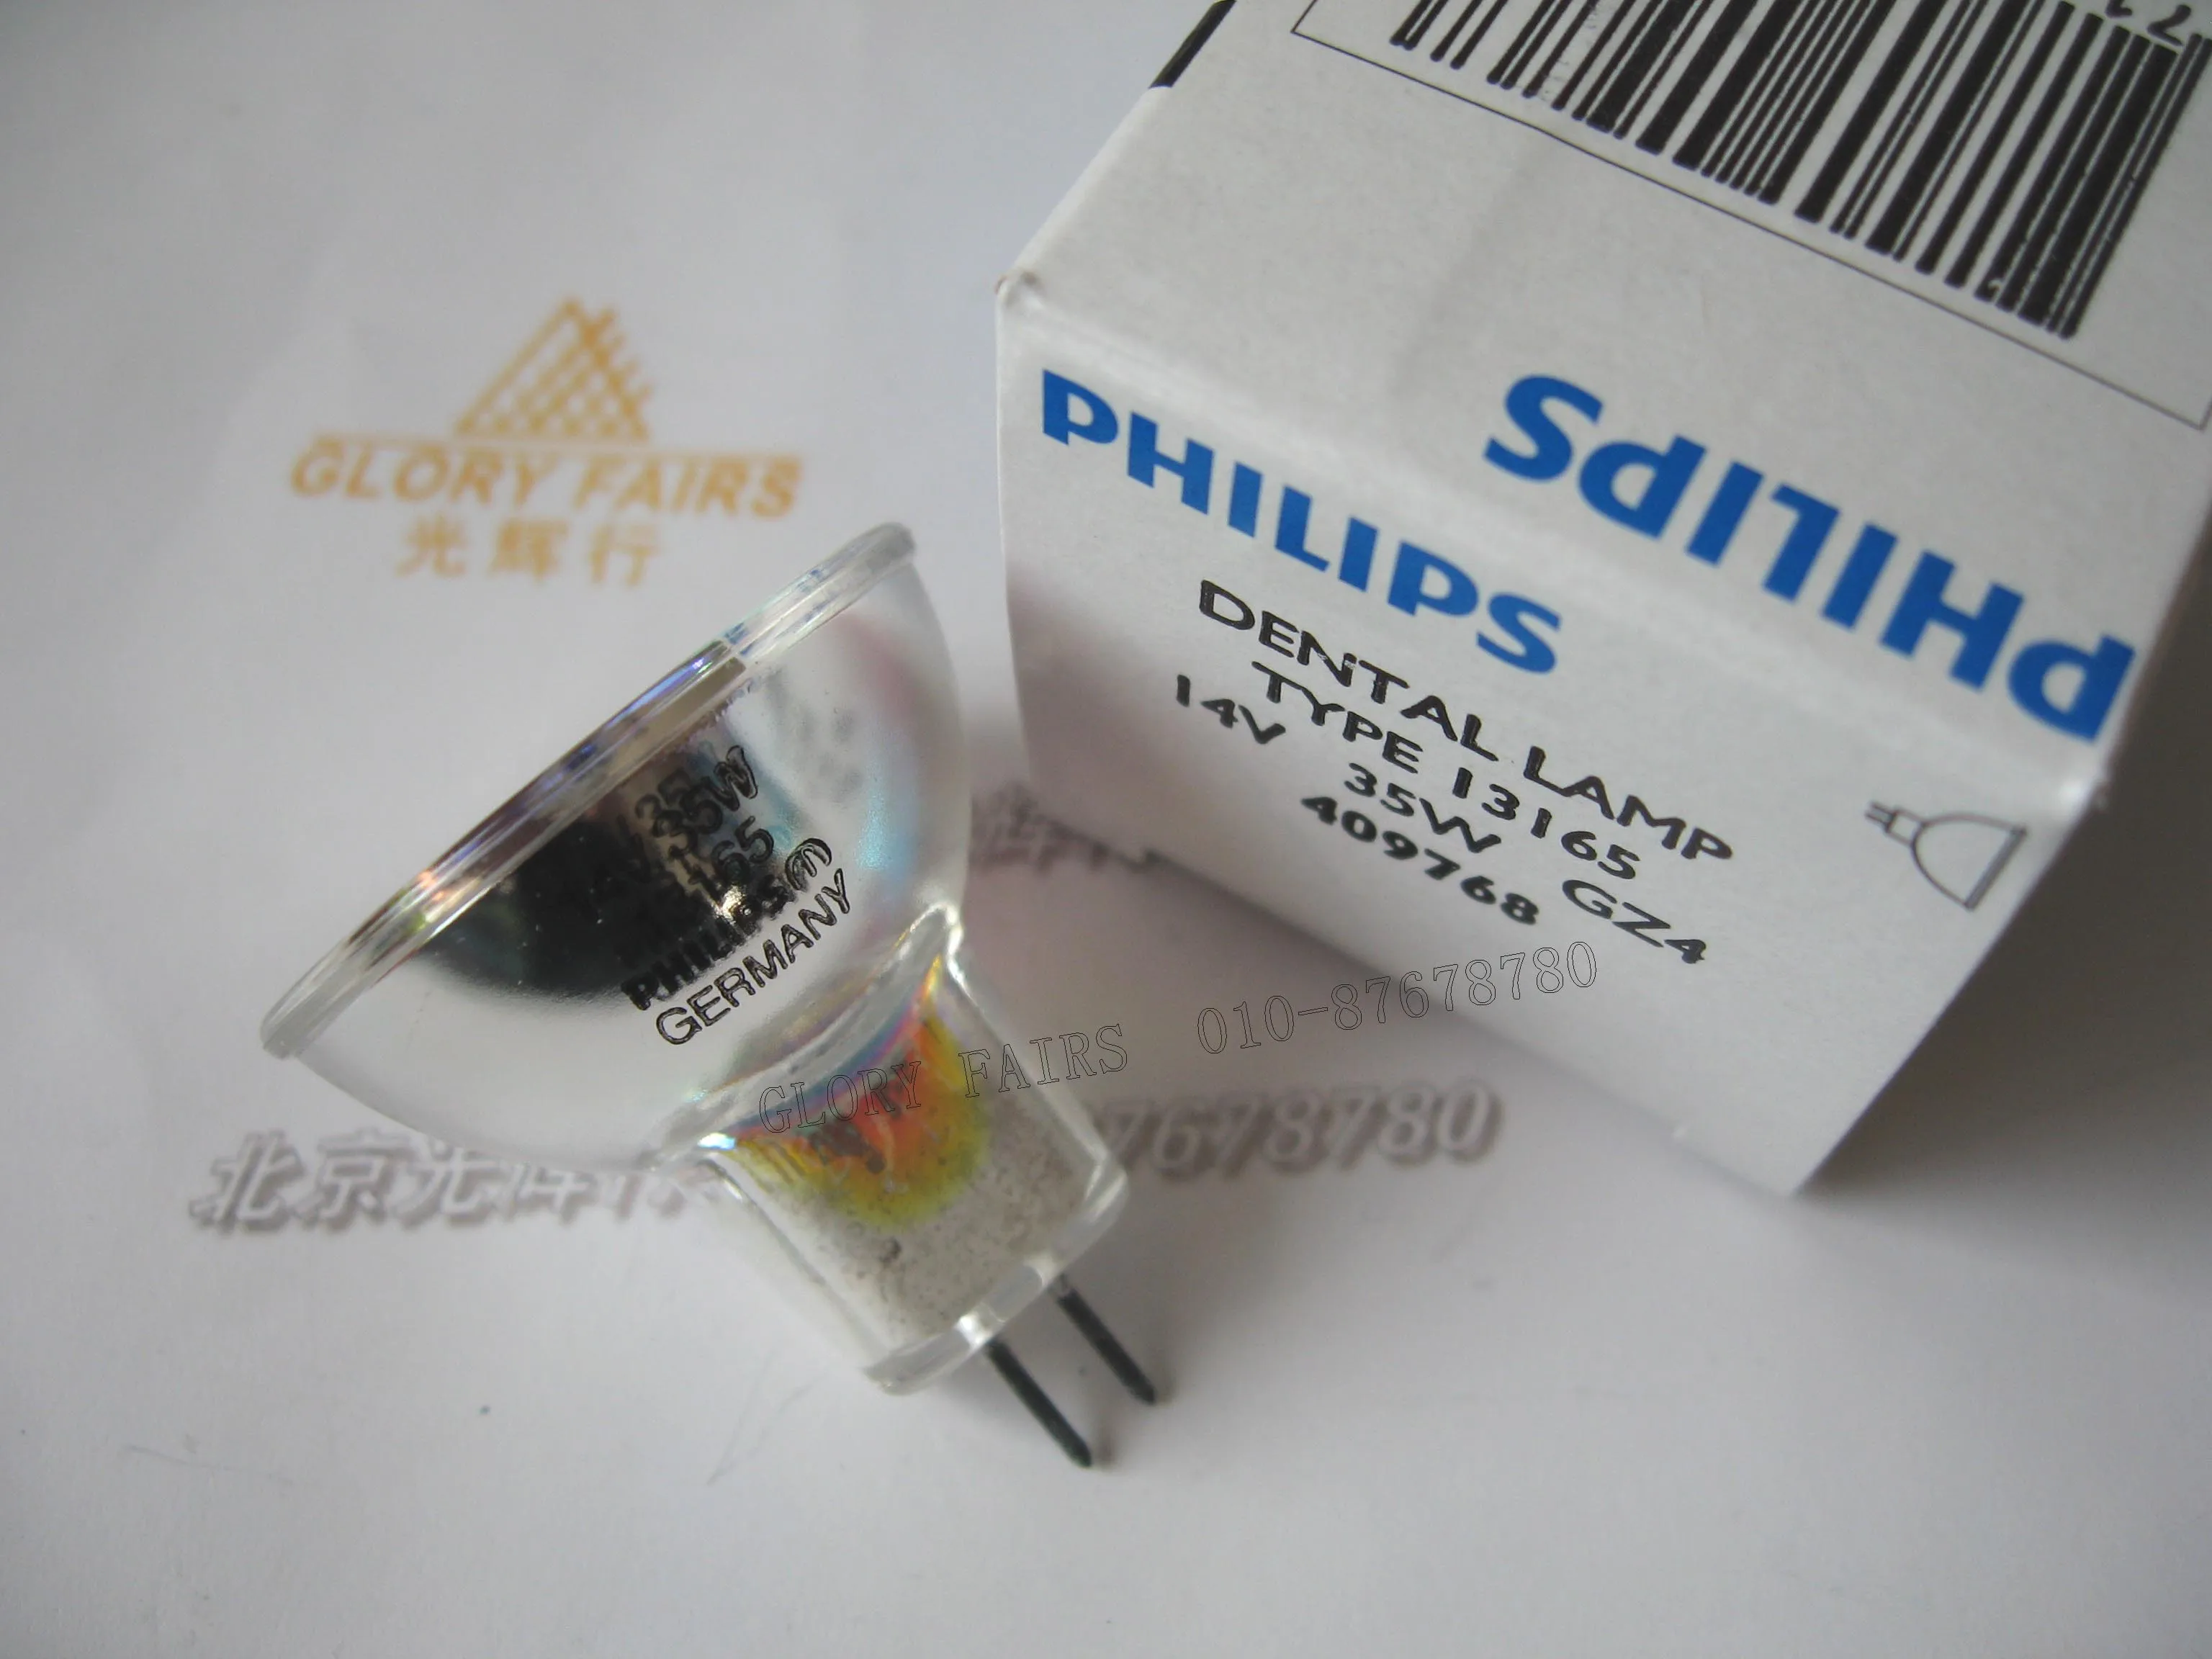 Лампа для затвердевания зубов Тип PH 13165 14 в 35 Вт GZ4 409768 | Лампы и освещение - Фото №1